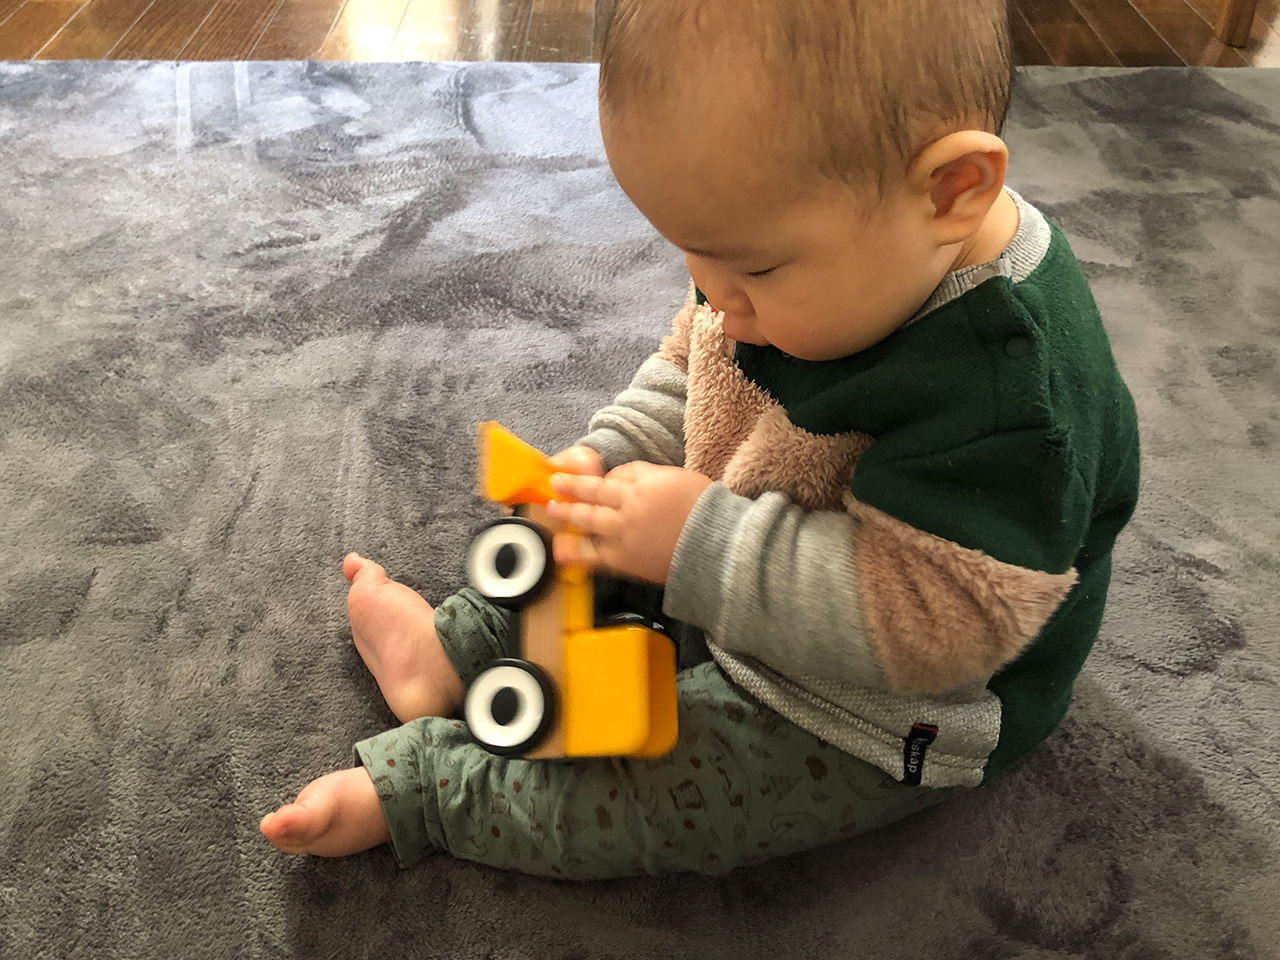 Ikeaのおもちゃ Lillabo リラブー は7ヶ月の子にはまだ早かった模様 Thumb Sprain